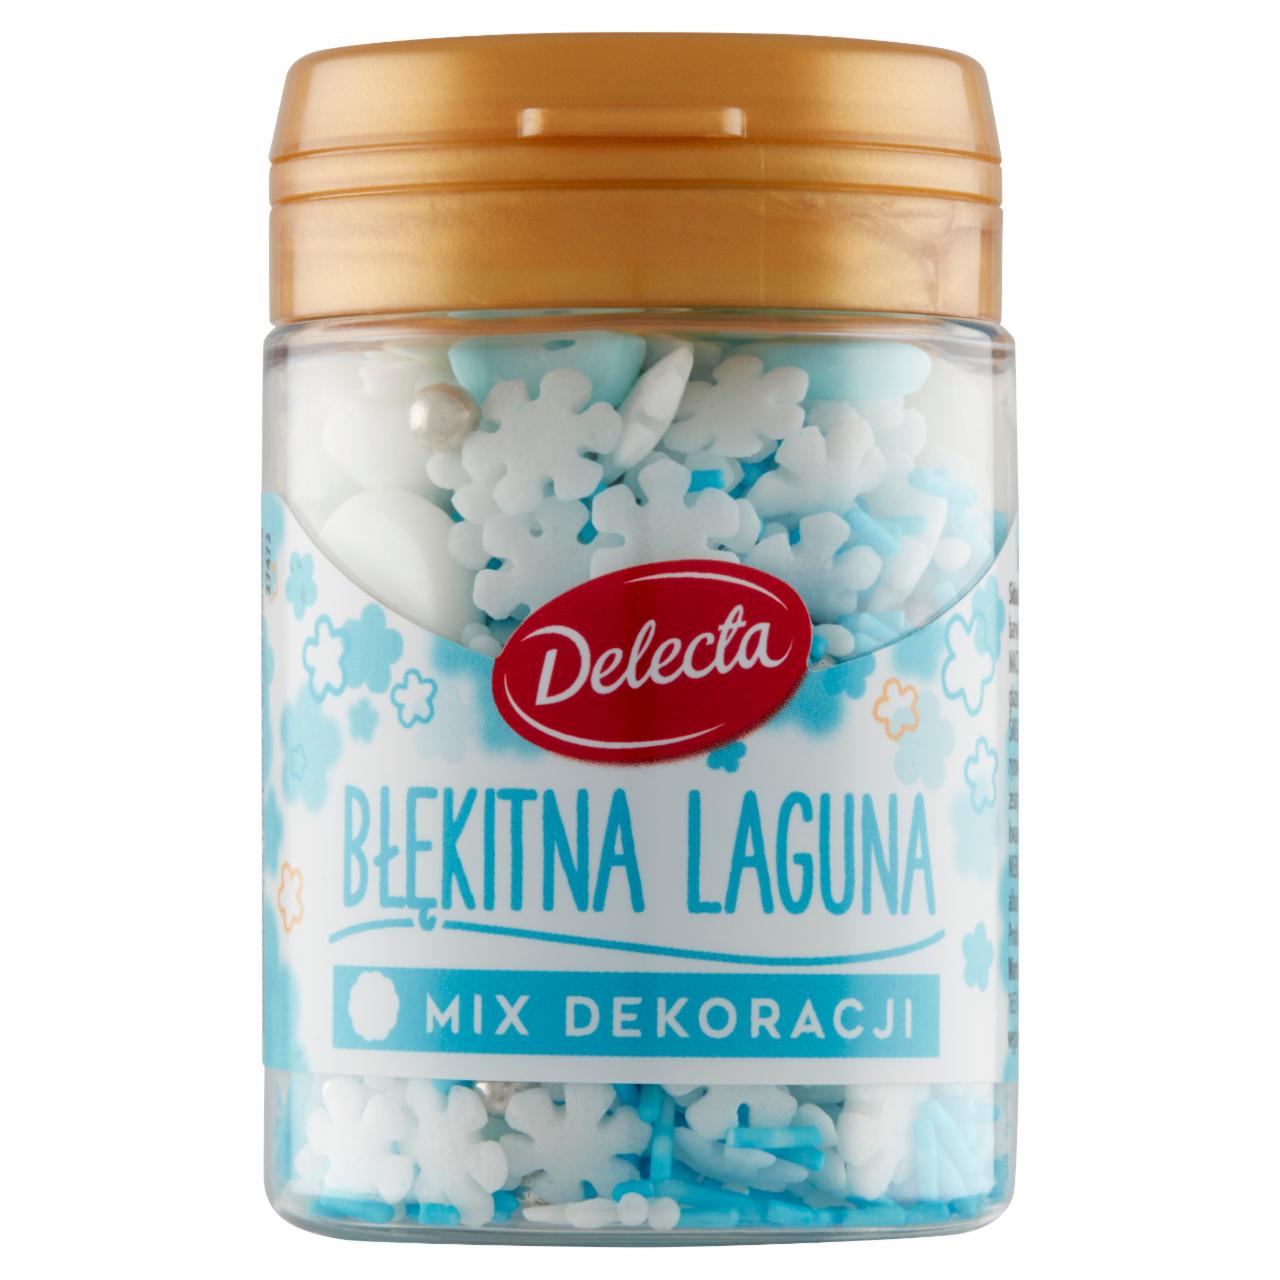 Zdjęcia - Delecta Mix dekoracji błękitna laguna 55 g